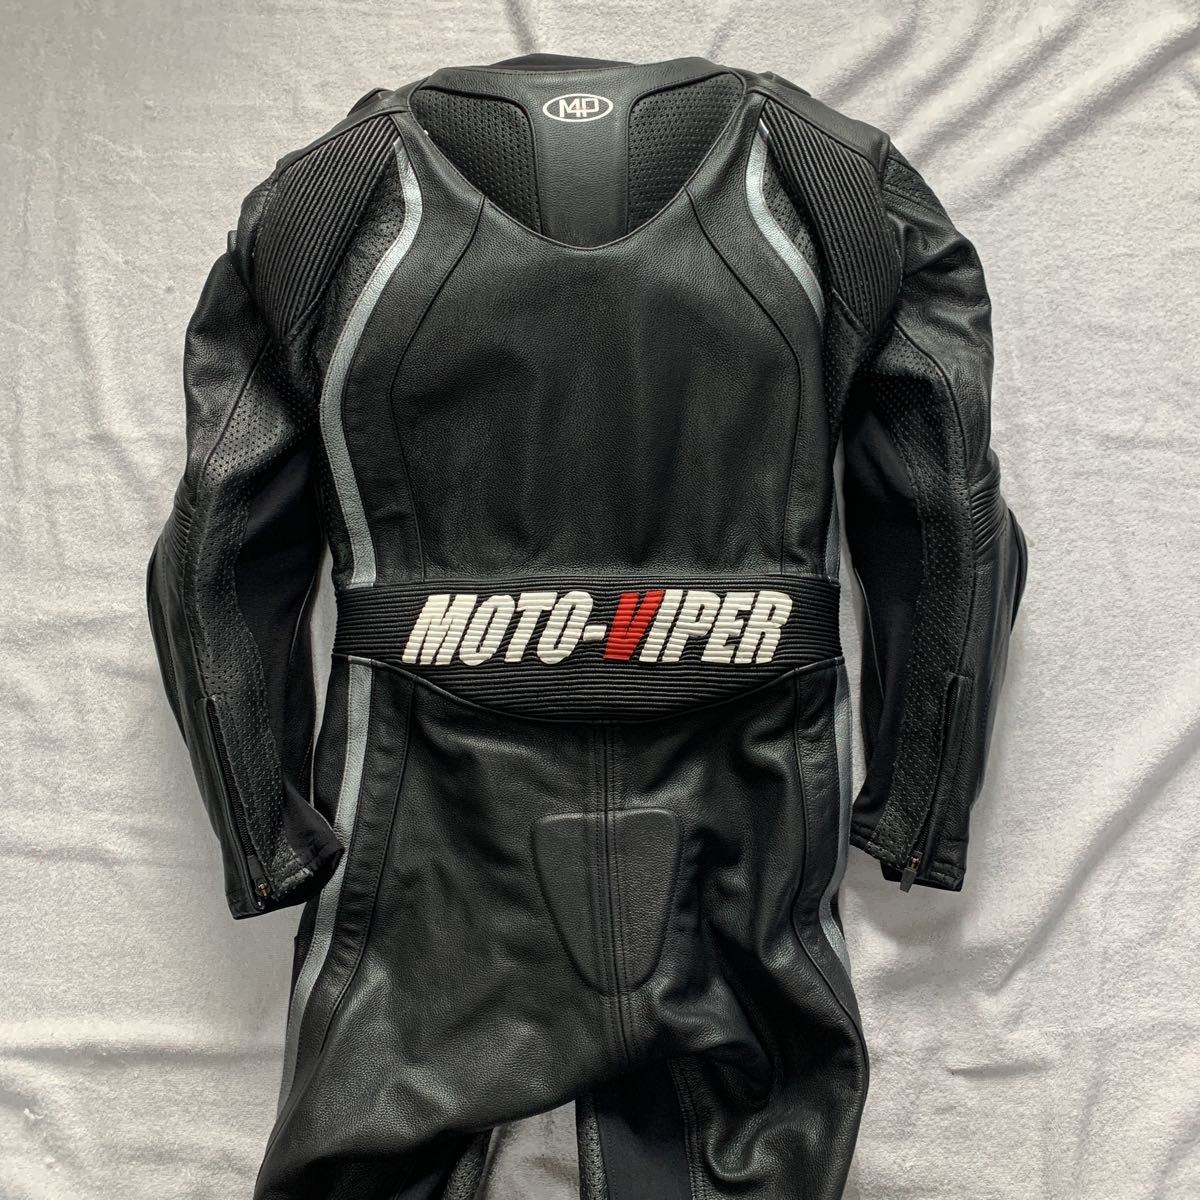 レーシングスーツ 革ツナギ Moto-Viper サイズL